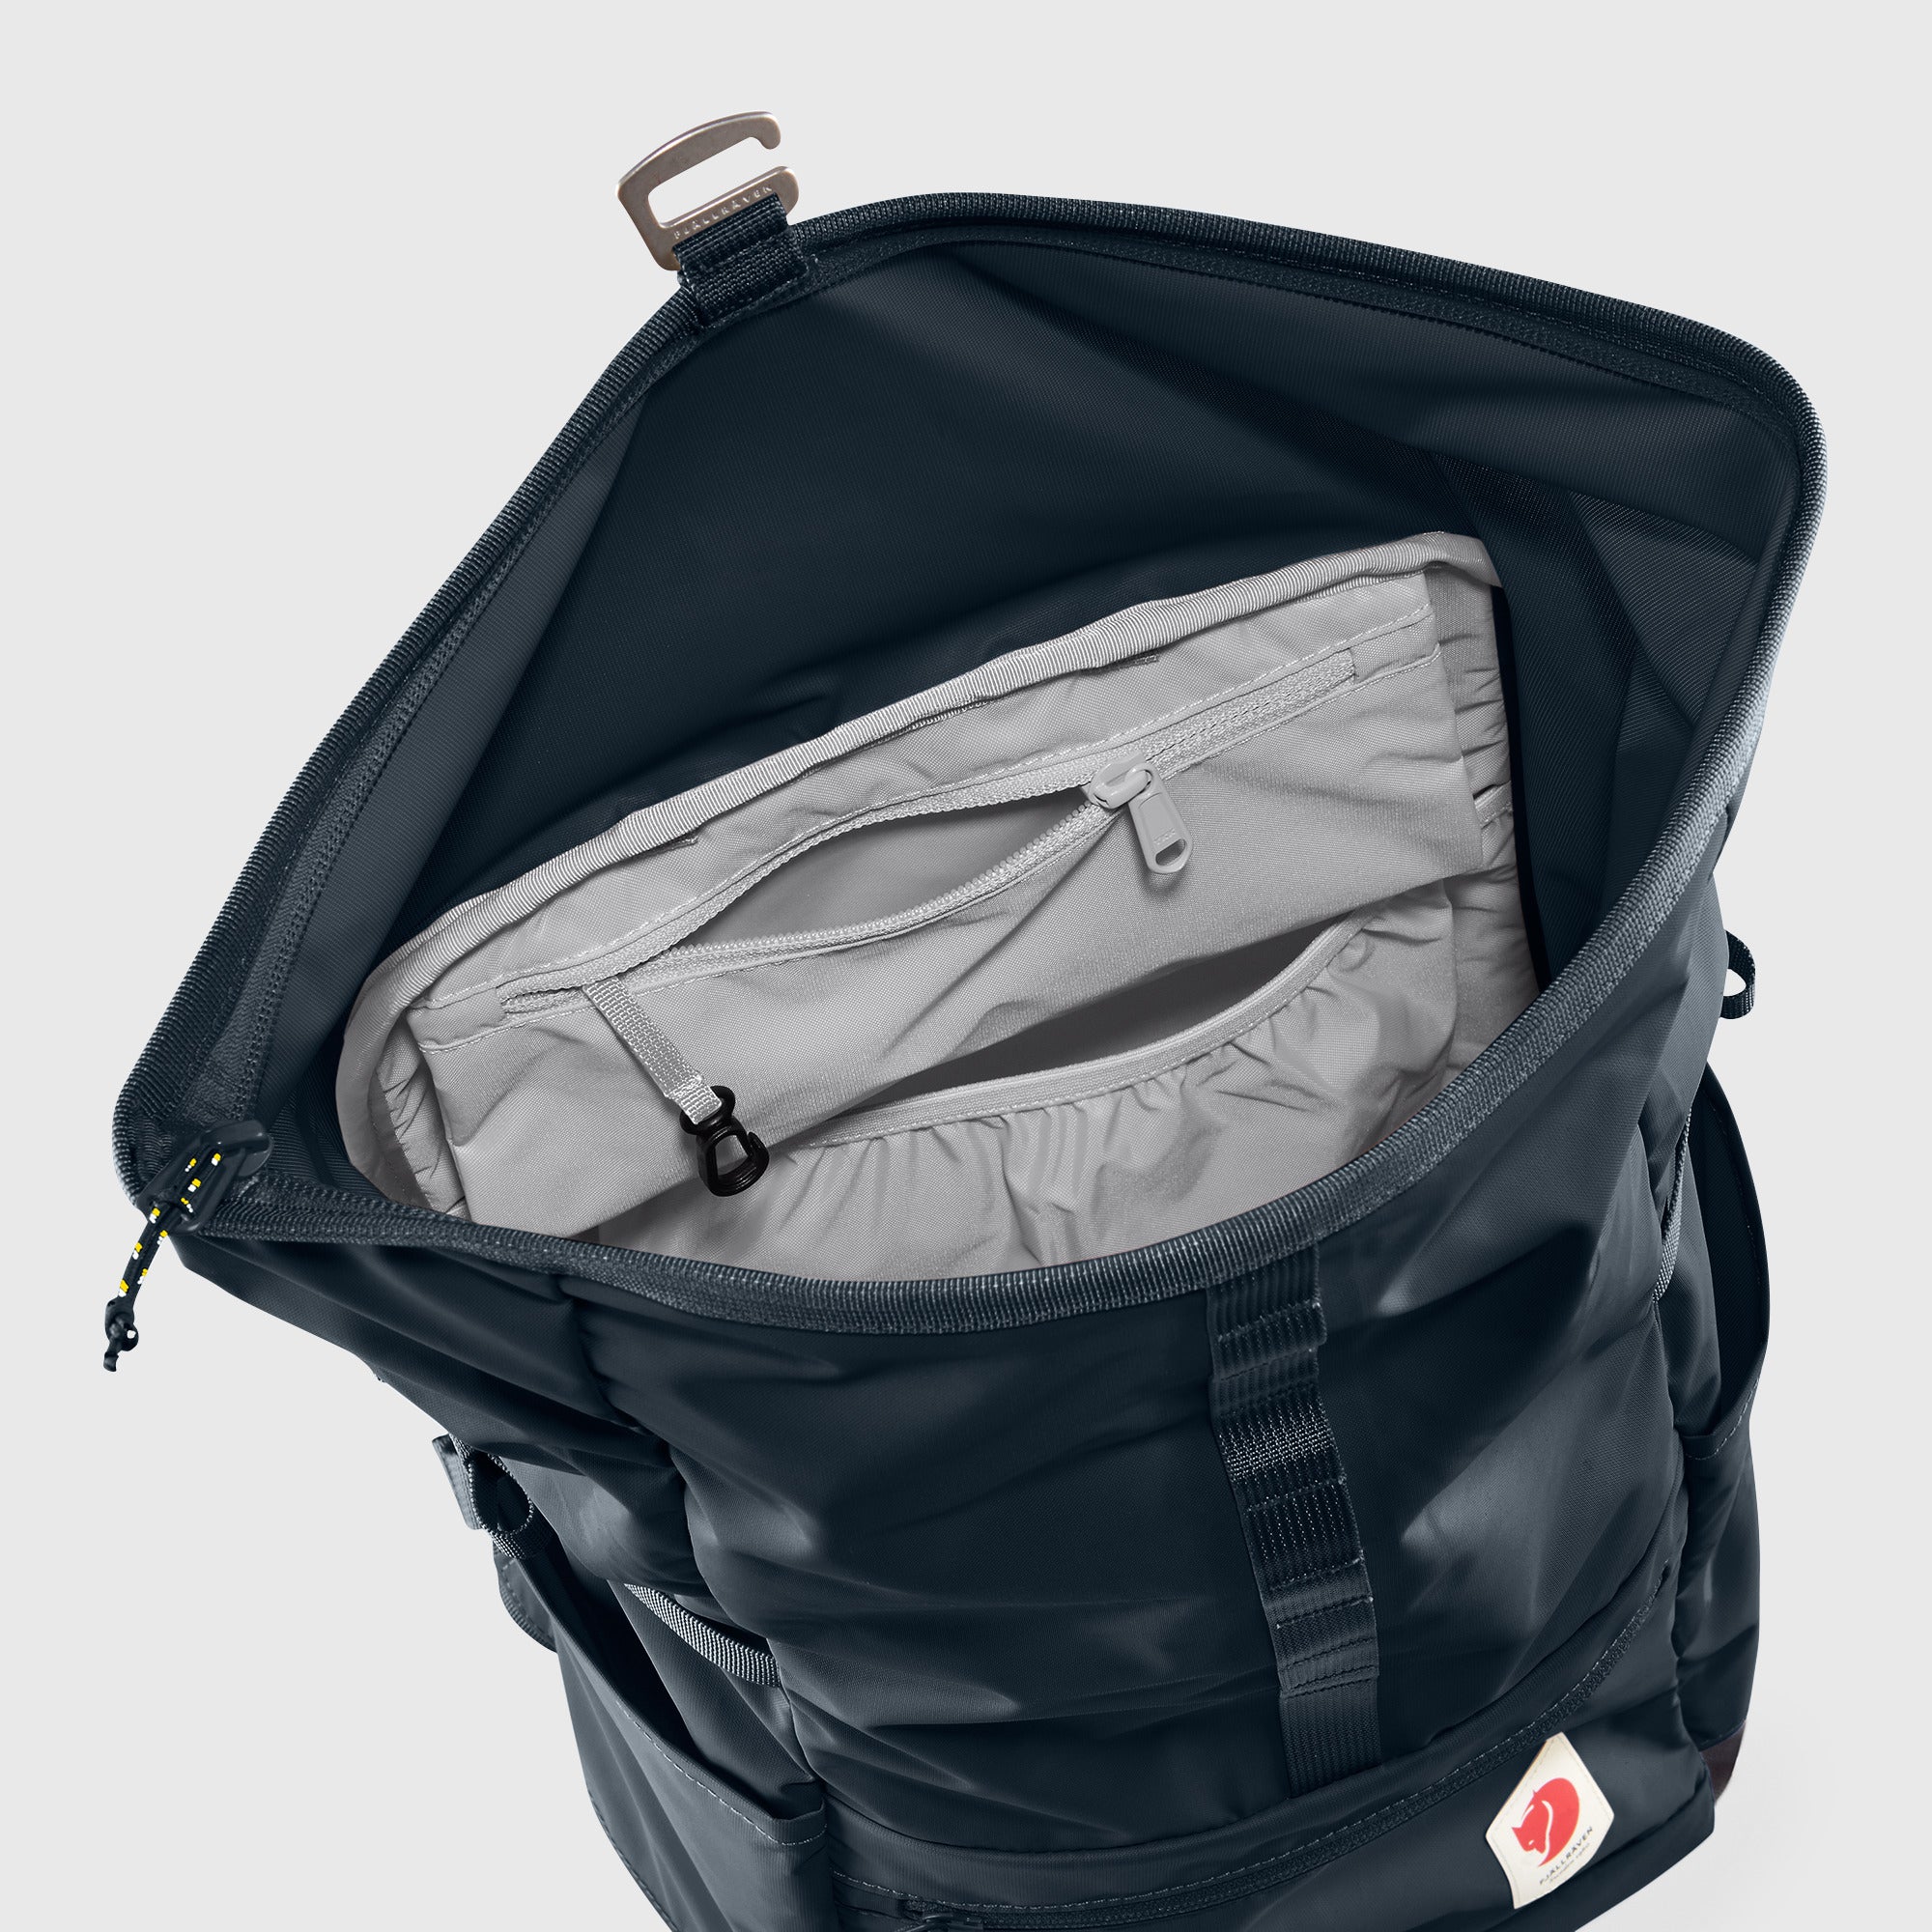 High Coast Foldsack 24L Backpack